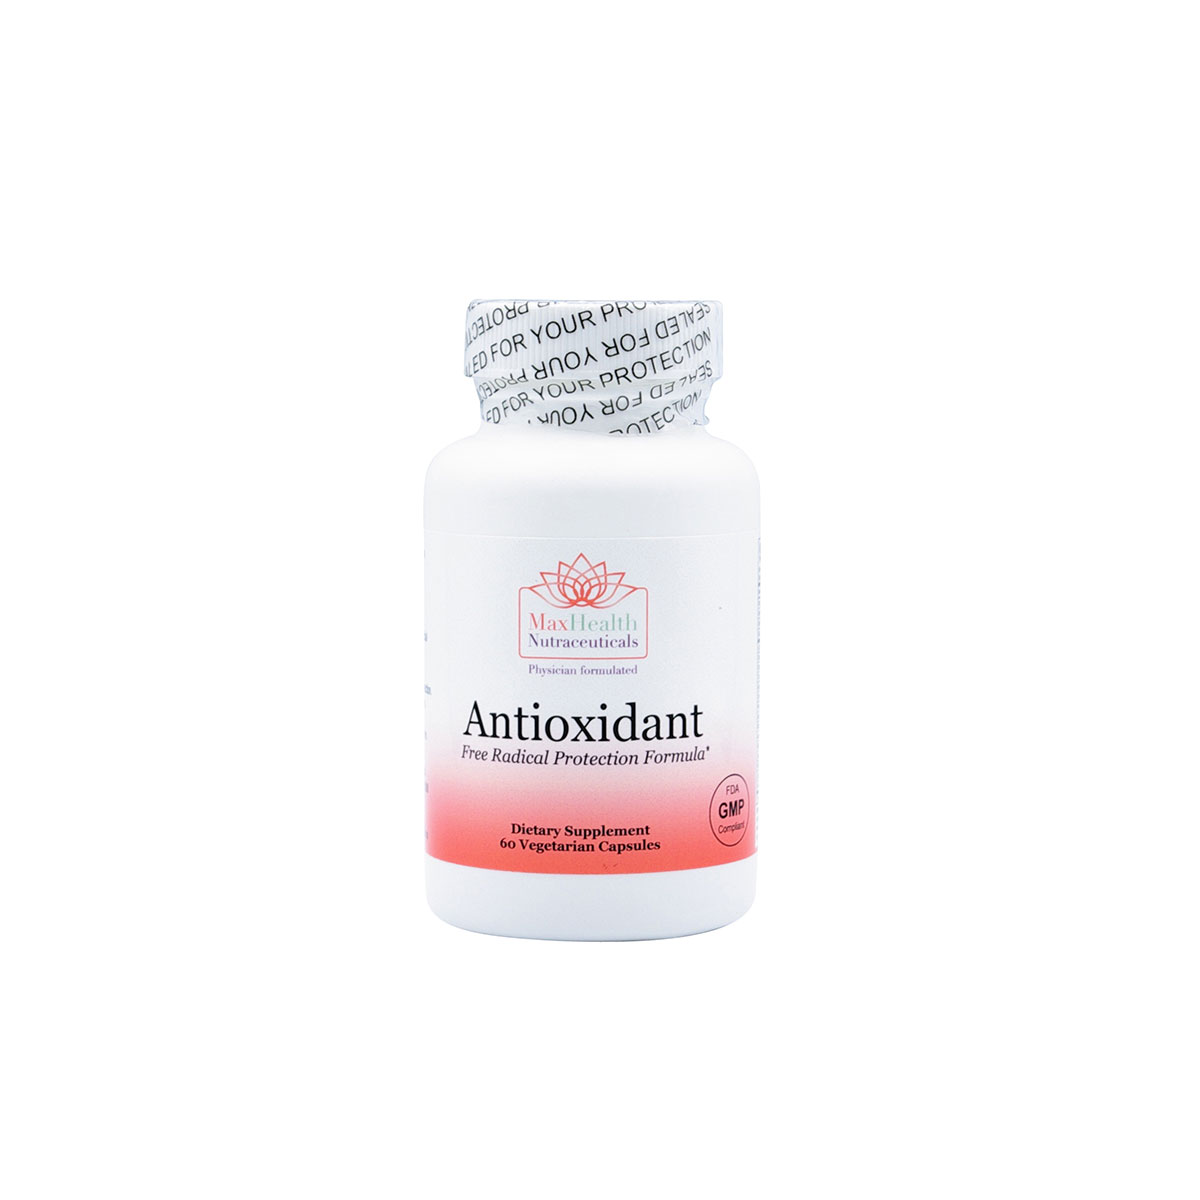 11Antioxidant Free Radical Protection Formula